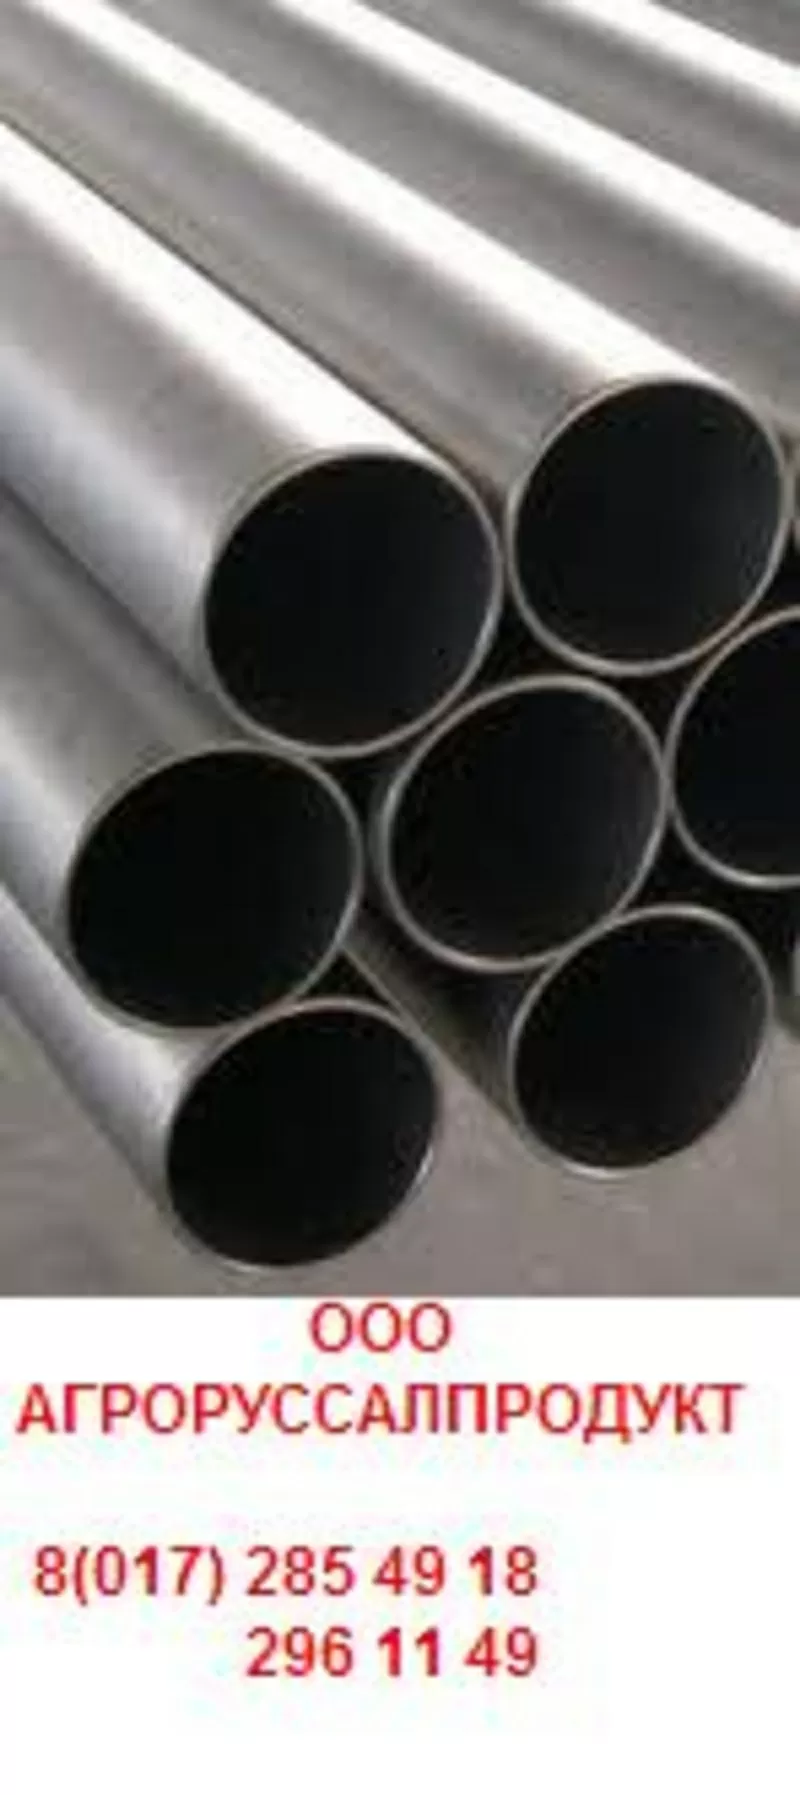 ПРОДАМ стальные трубы большого диаметра новые и б/у,  сварные и толстос